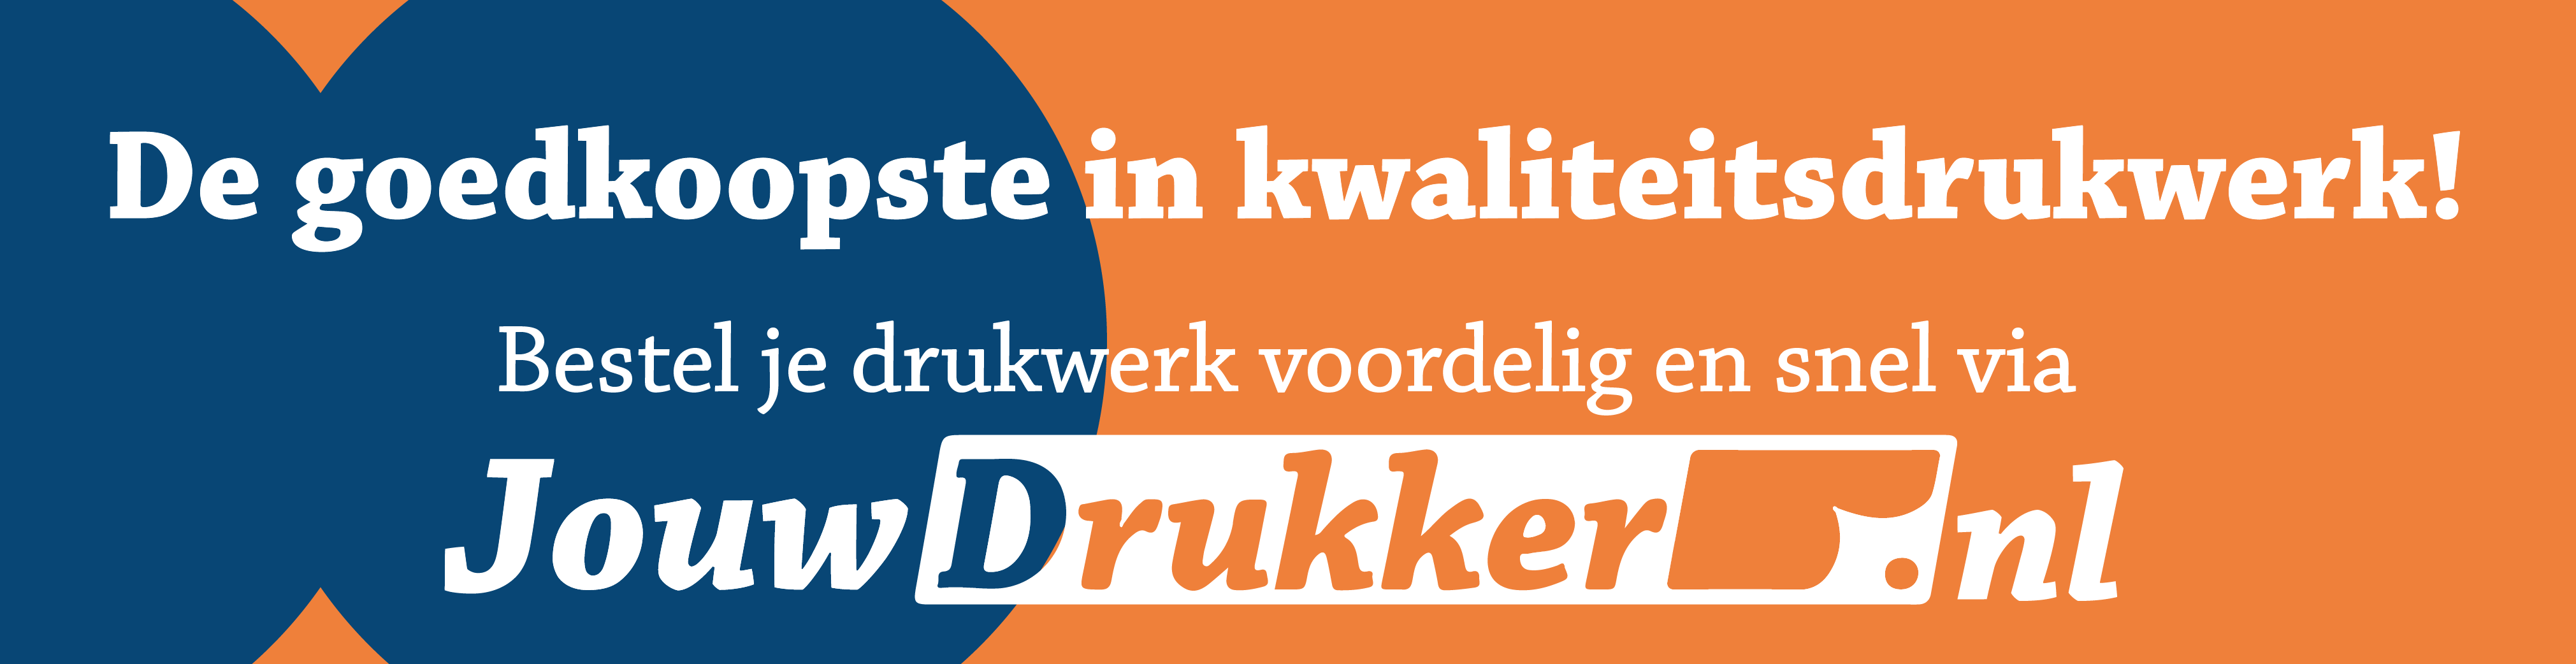 16112022_Jouwdrukker.nl_online-advertentie_2